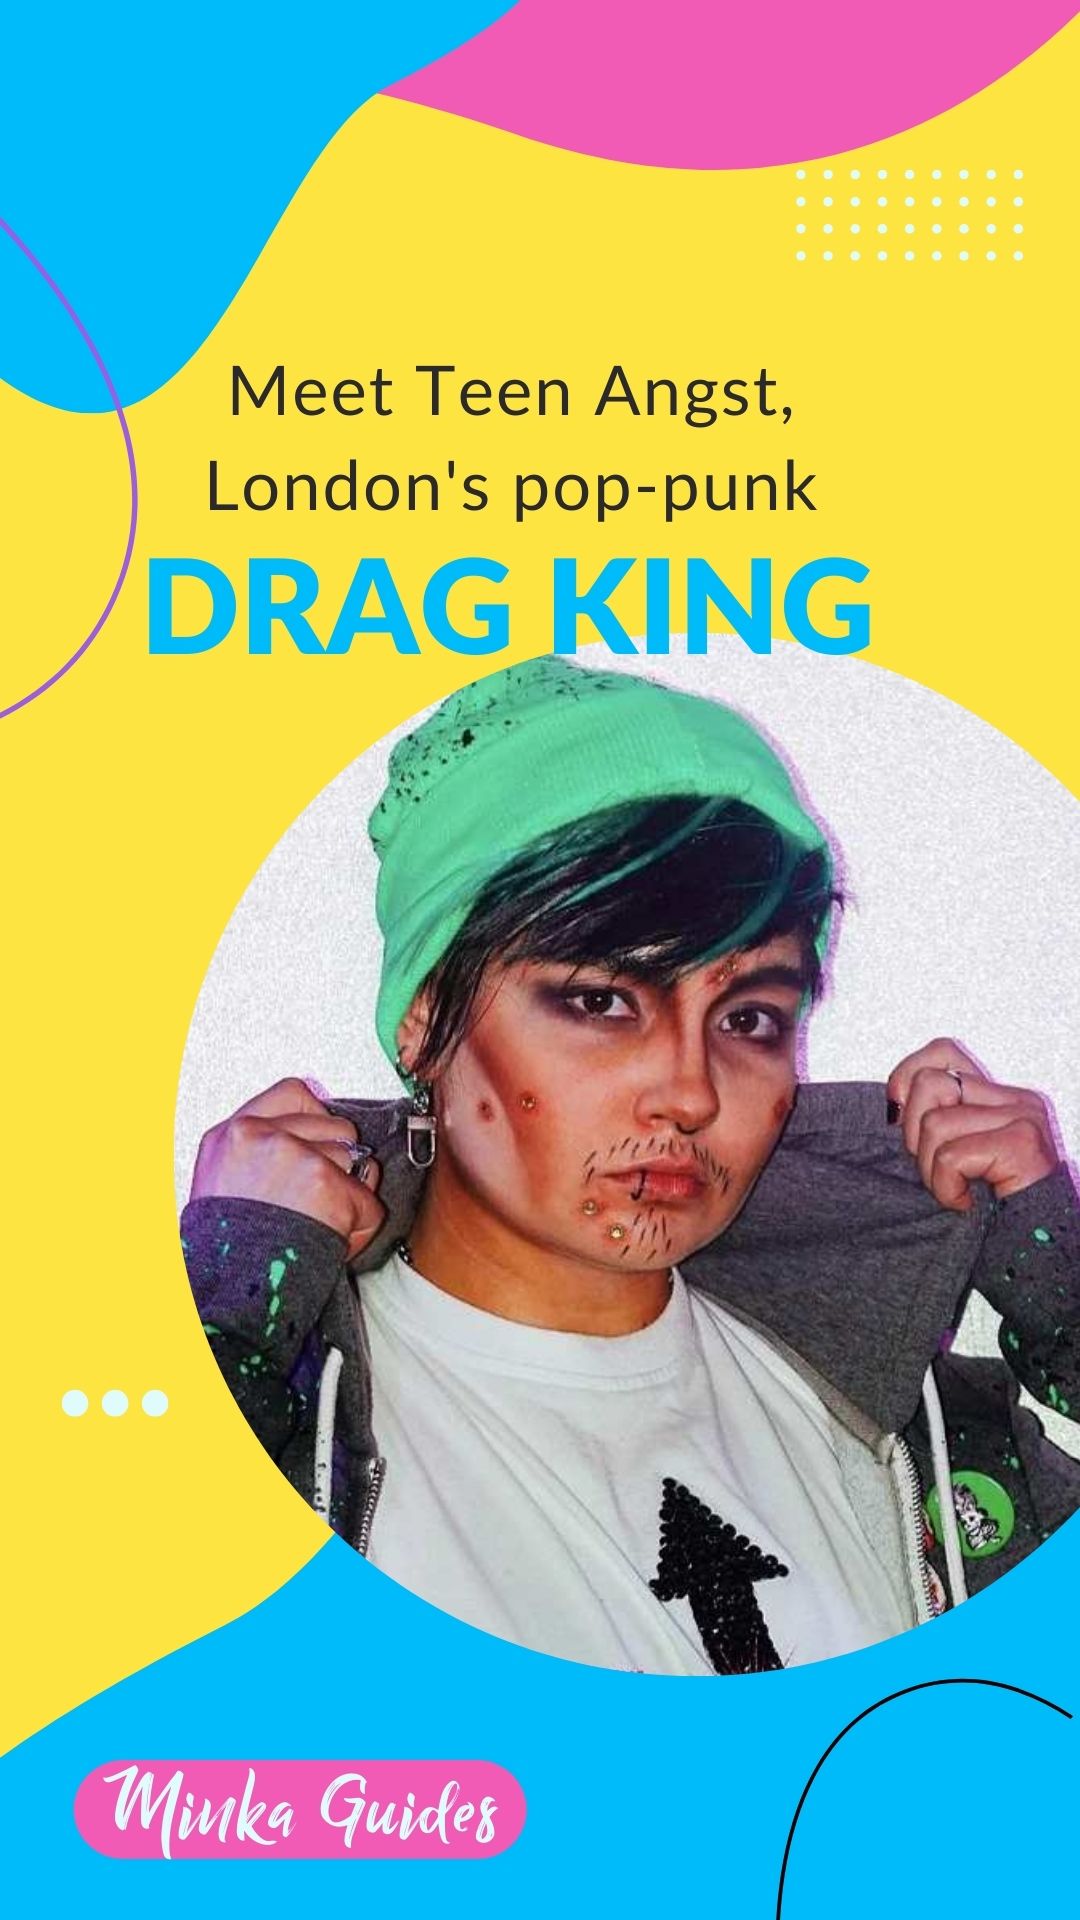 Meet Teen Angst, London’s pop-punk drag king